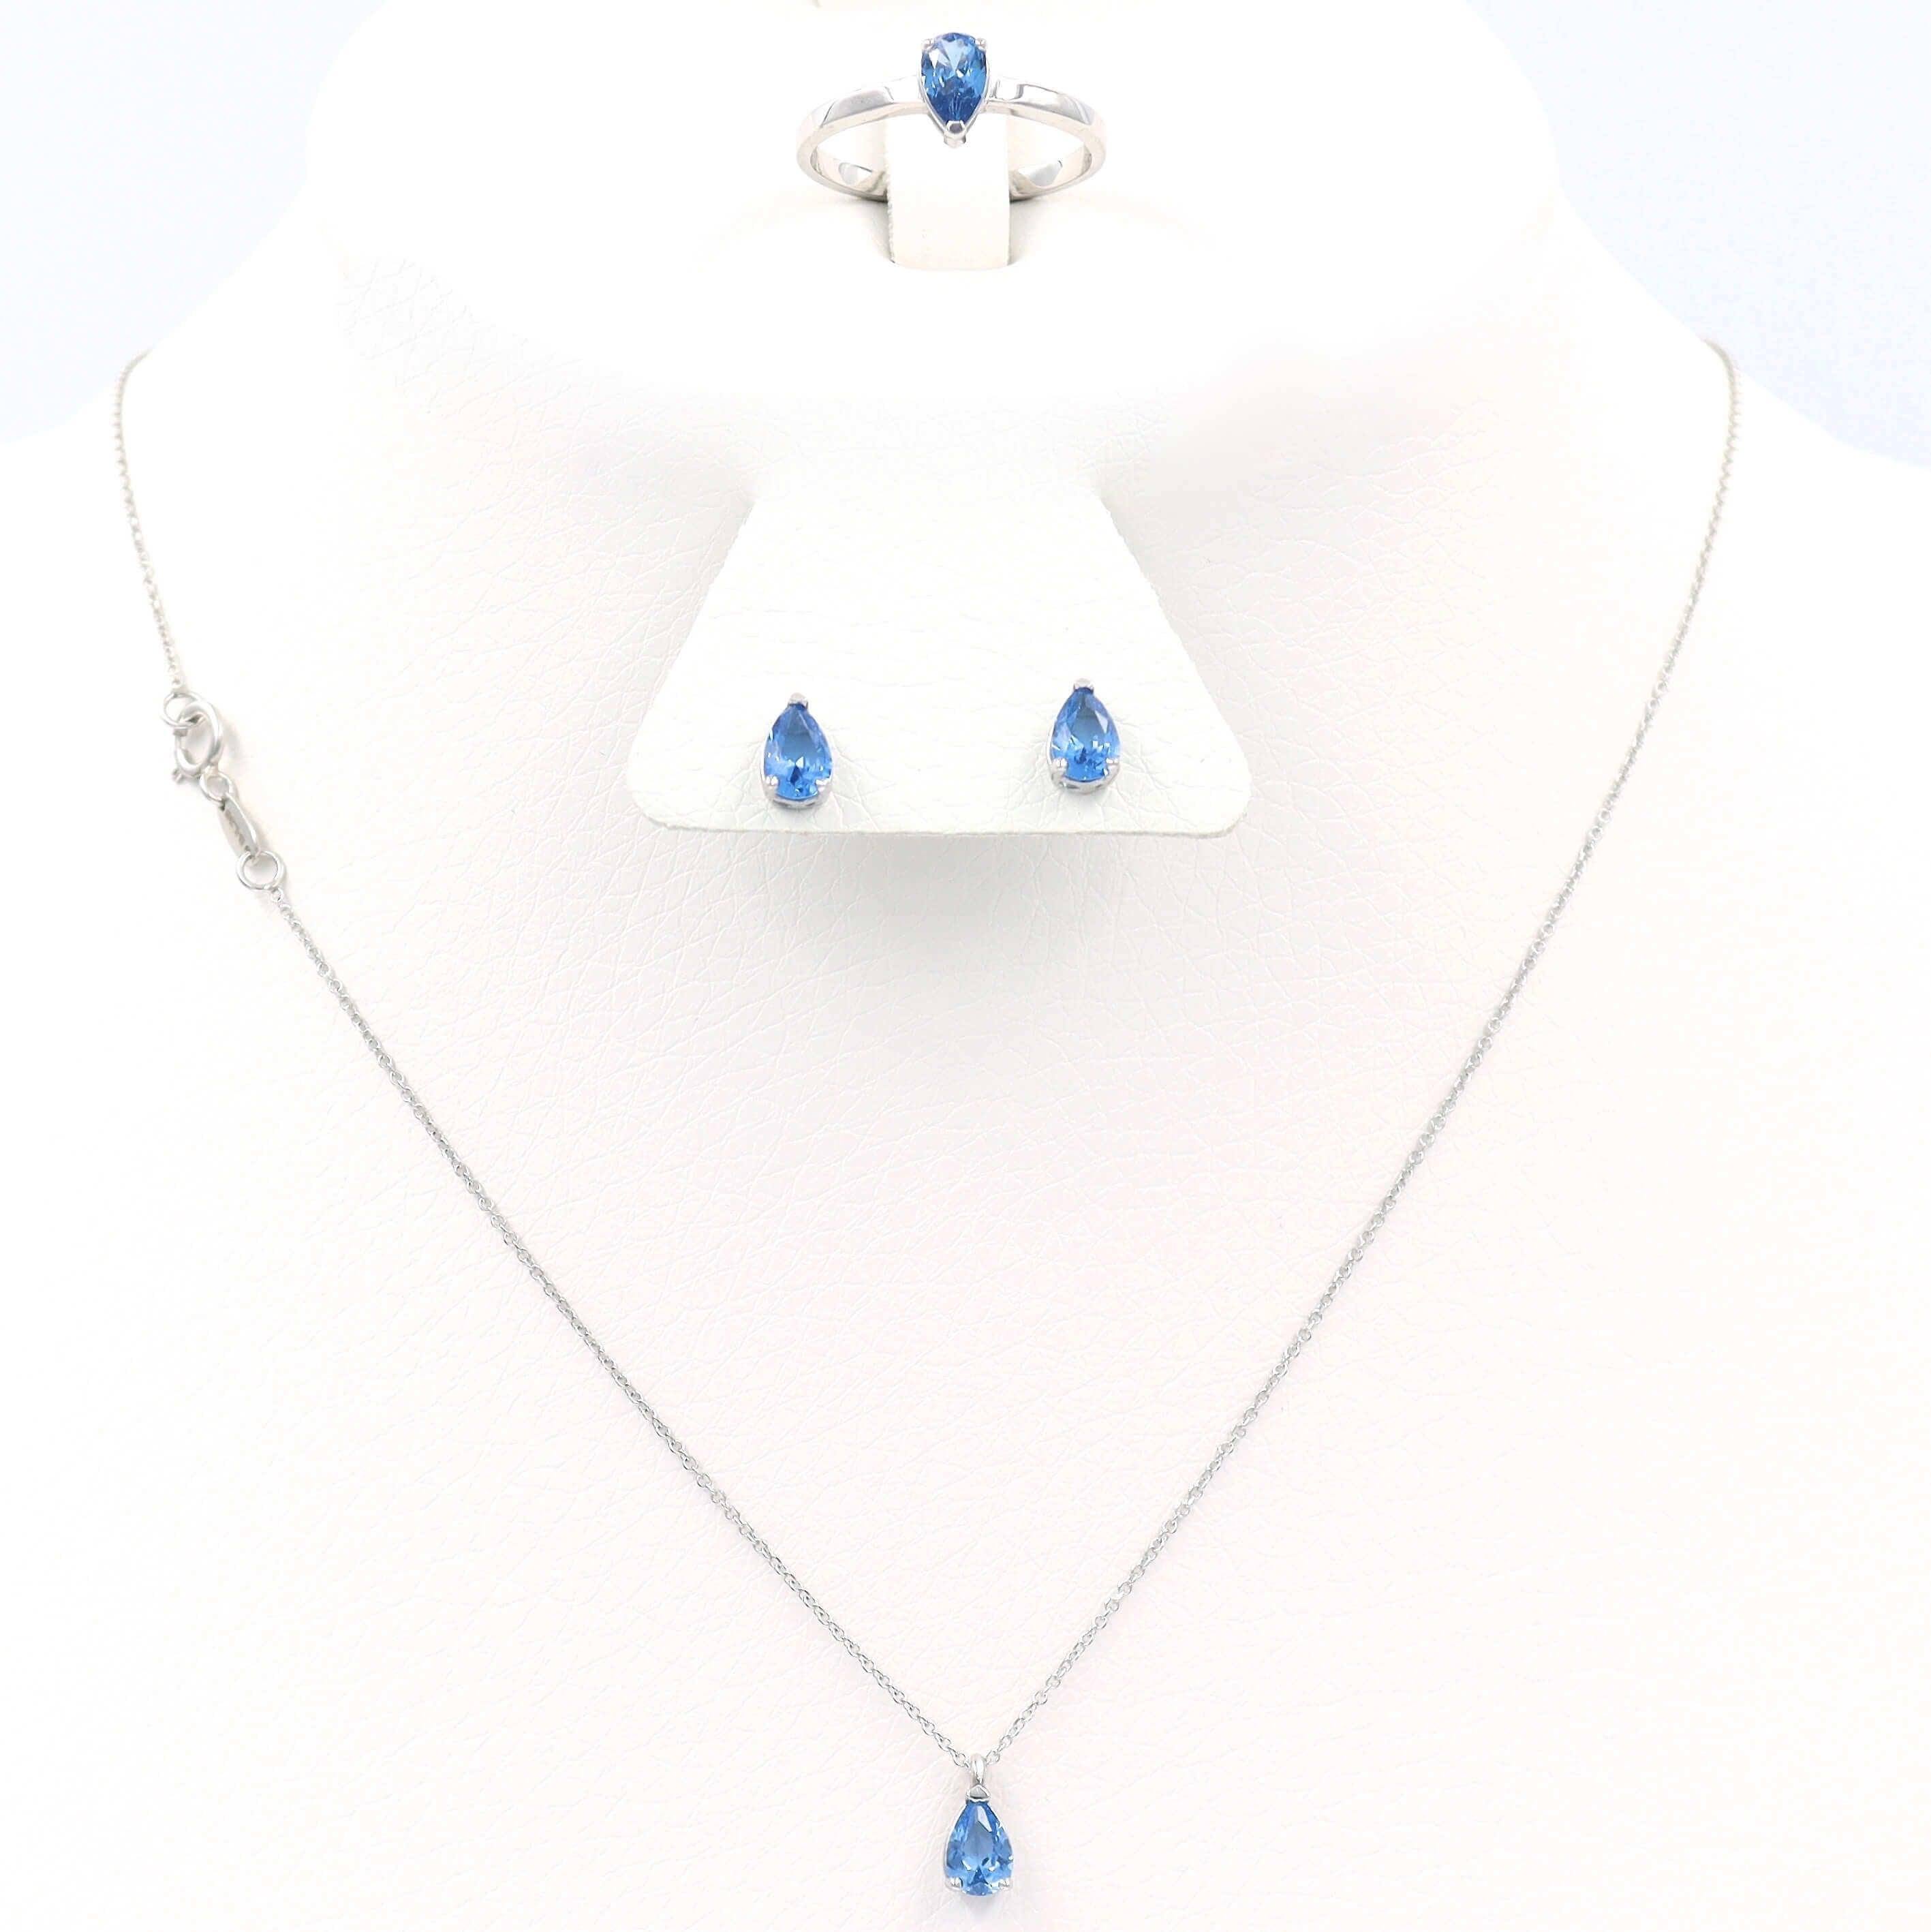 Λευκόχρυσο Σετ Γάμου με γαλάζιες πέτρες σε σχήμα σταγόνας